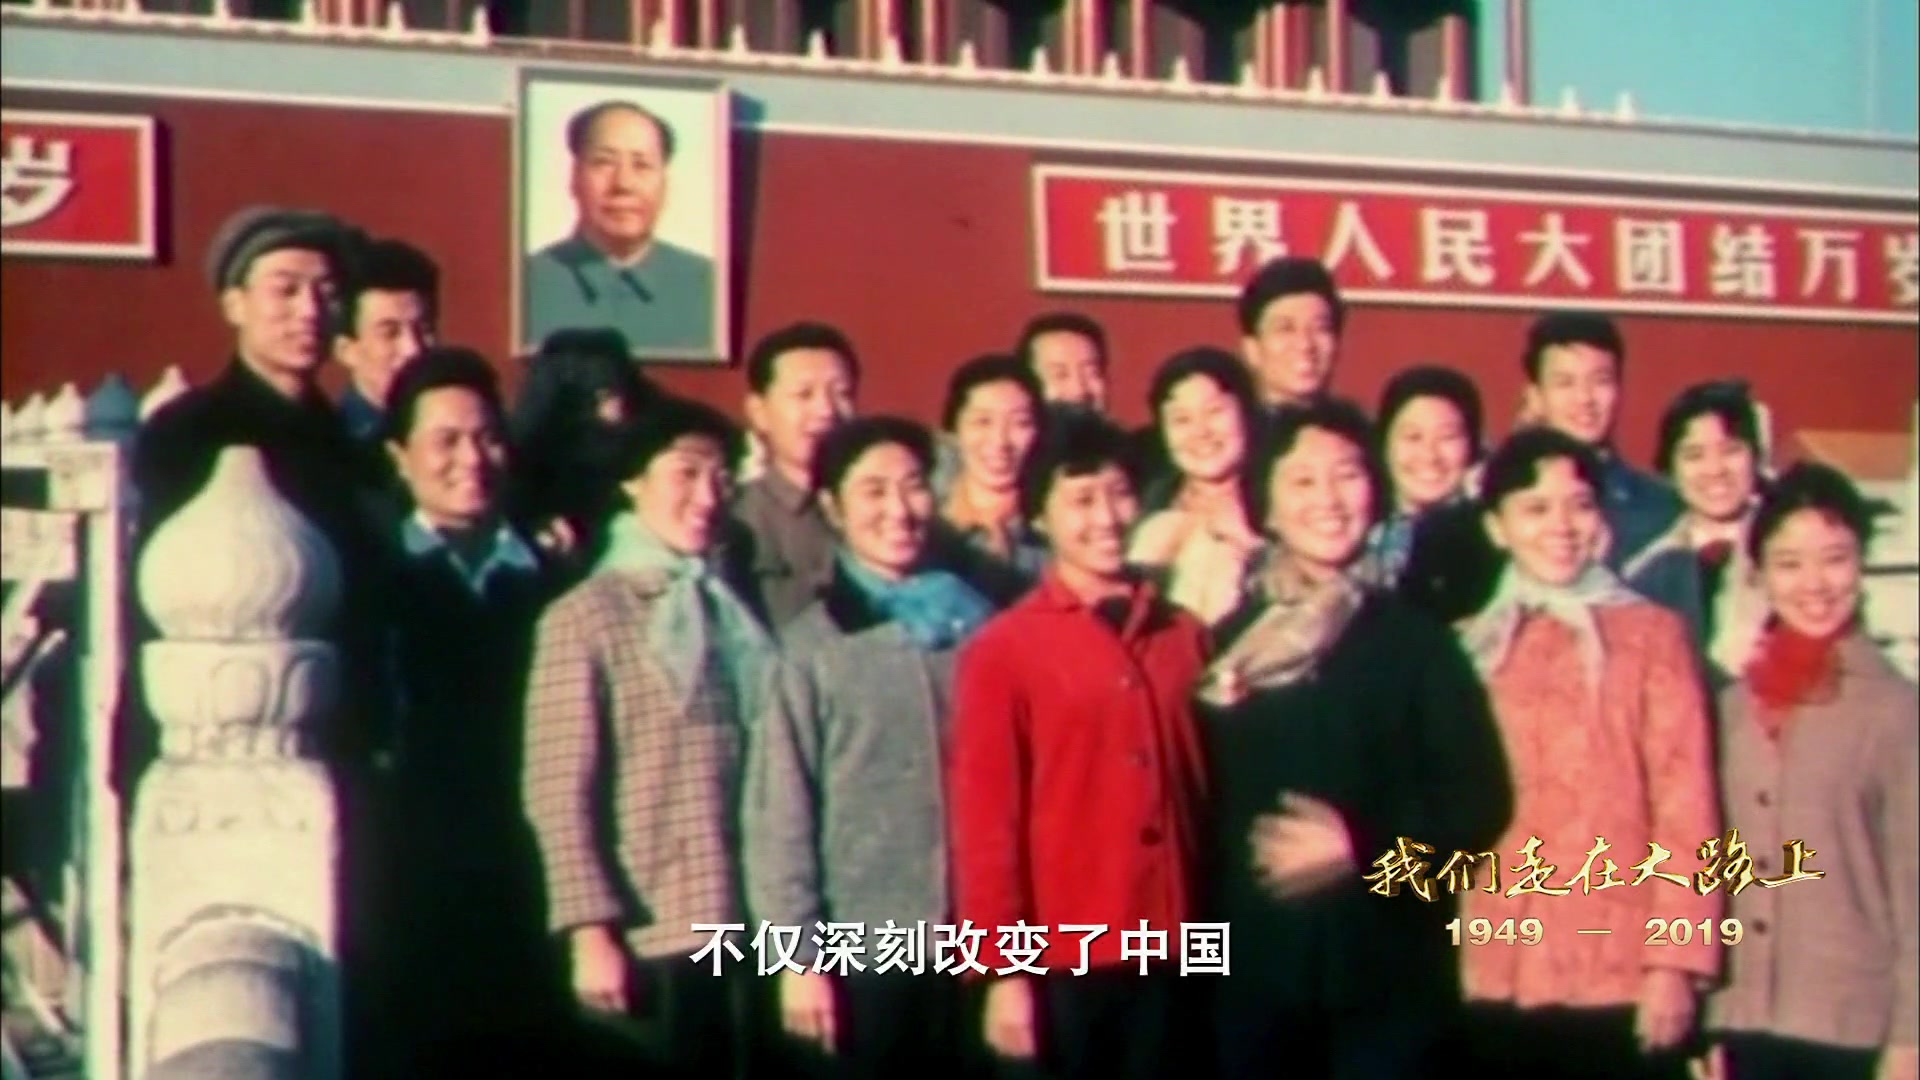 第四集 起宏图 - 系列纪录片《我们走在大路上》-新中国成立后都经历了些什么？